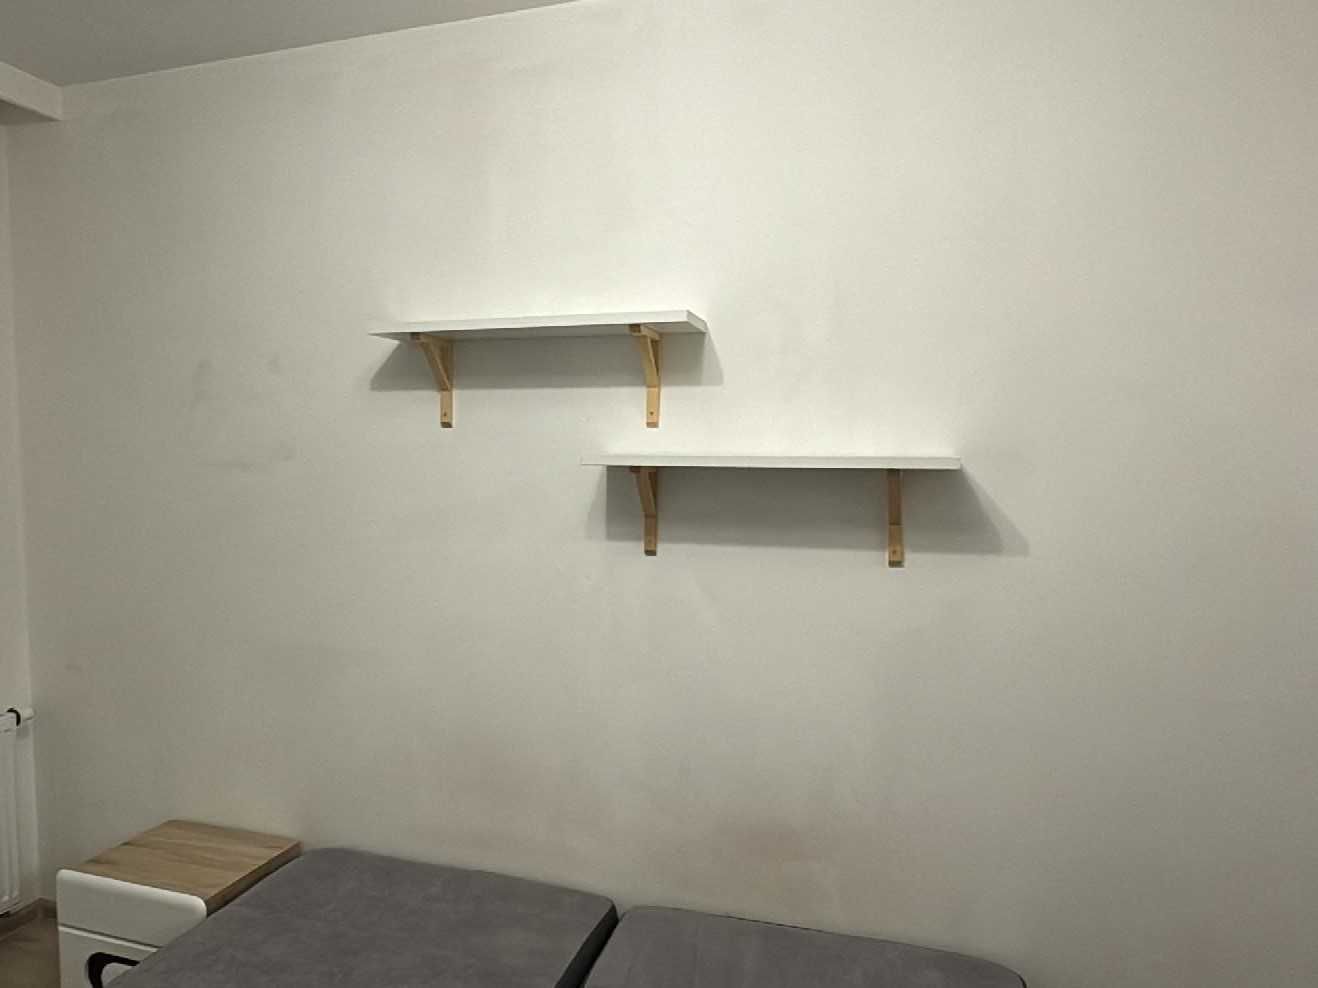 dwie półki ścienne z IKEA - BURHULT / SANDSHULT (80 cm x 20 cm)